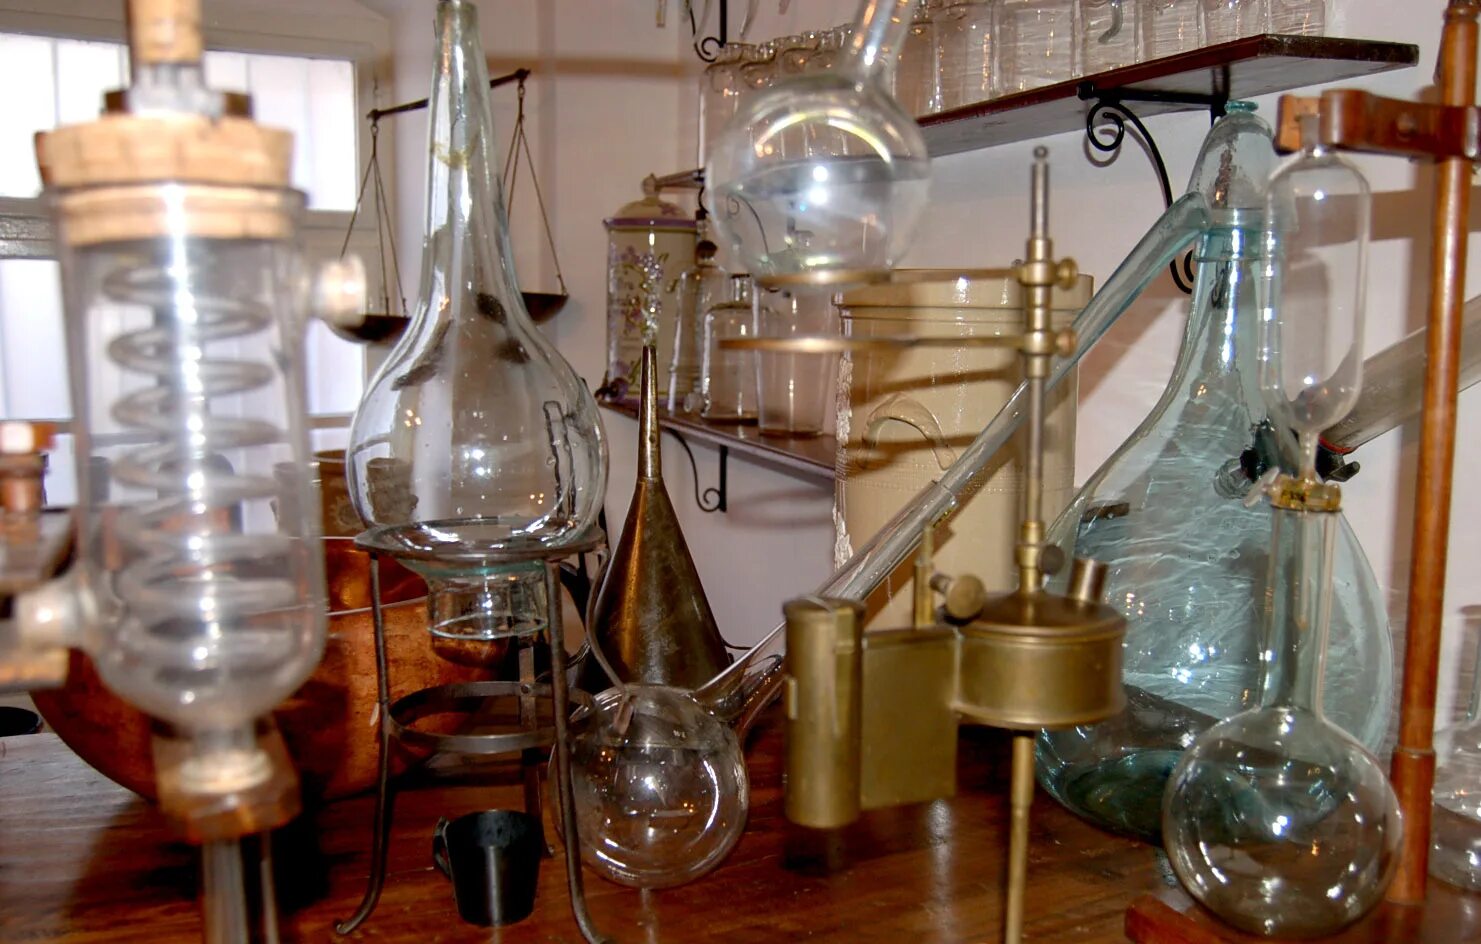 Аптечная лаборатория 19 век. Химическая лаборатория 19 века. Алхимический перегонный аппарат. Старинная лаборатория. Колба новокузнецк